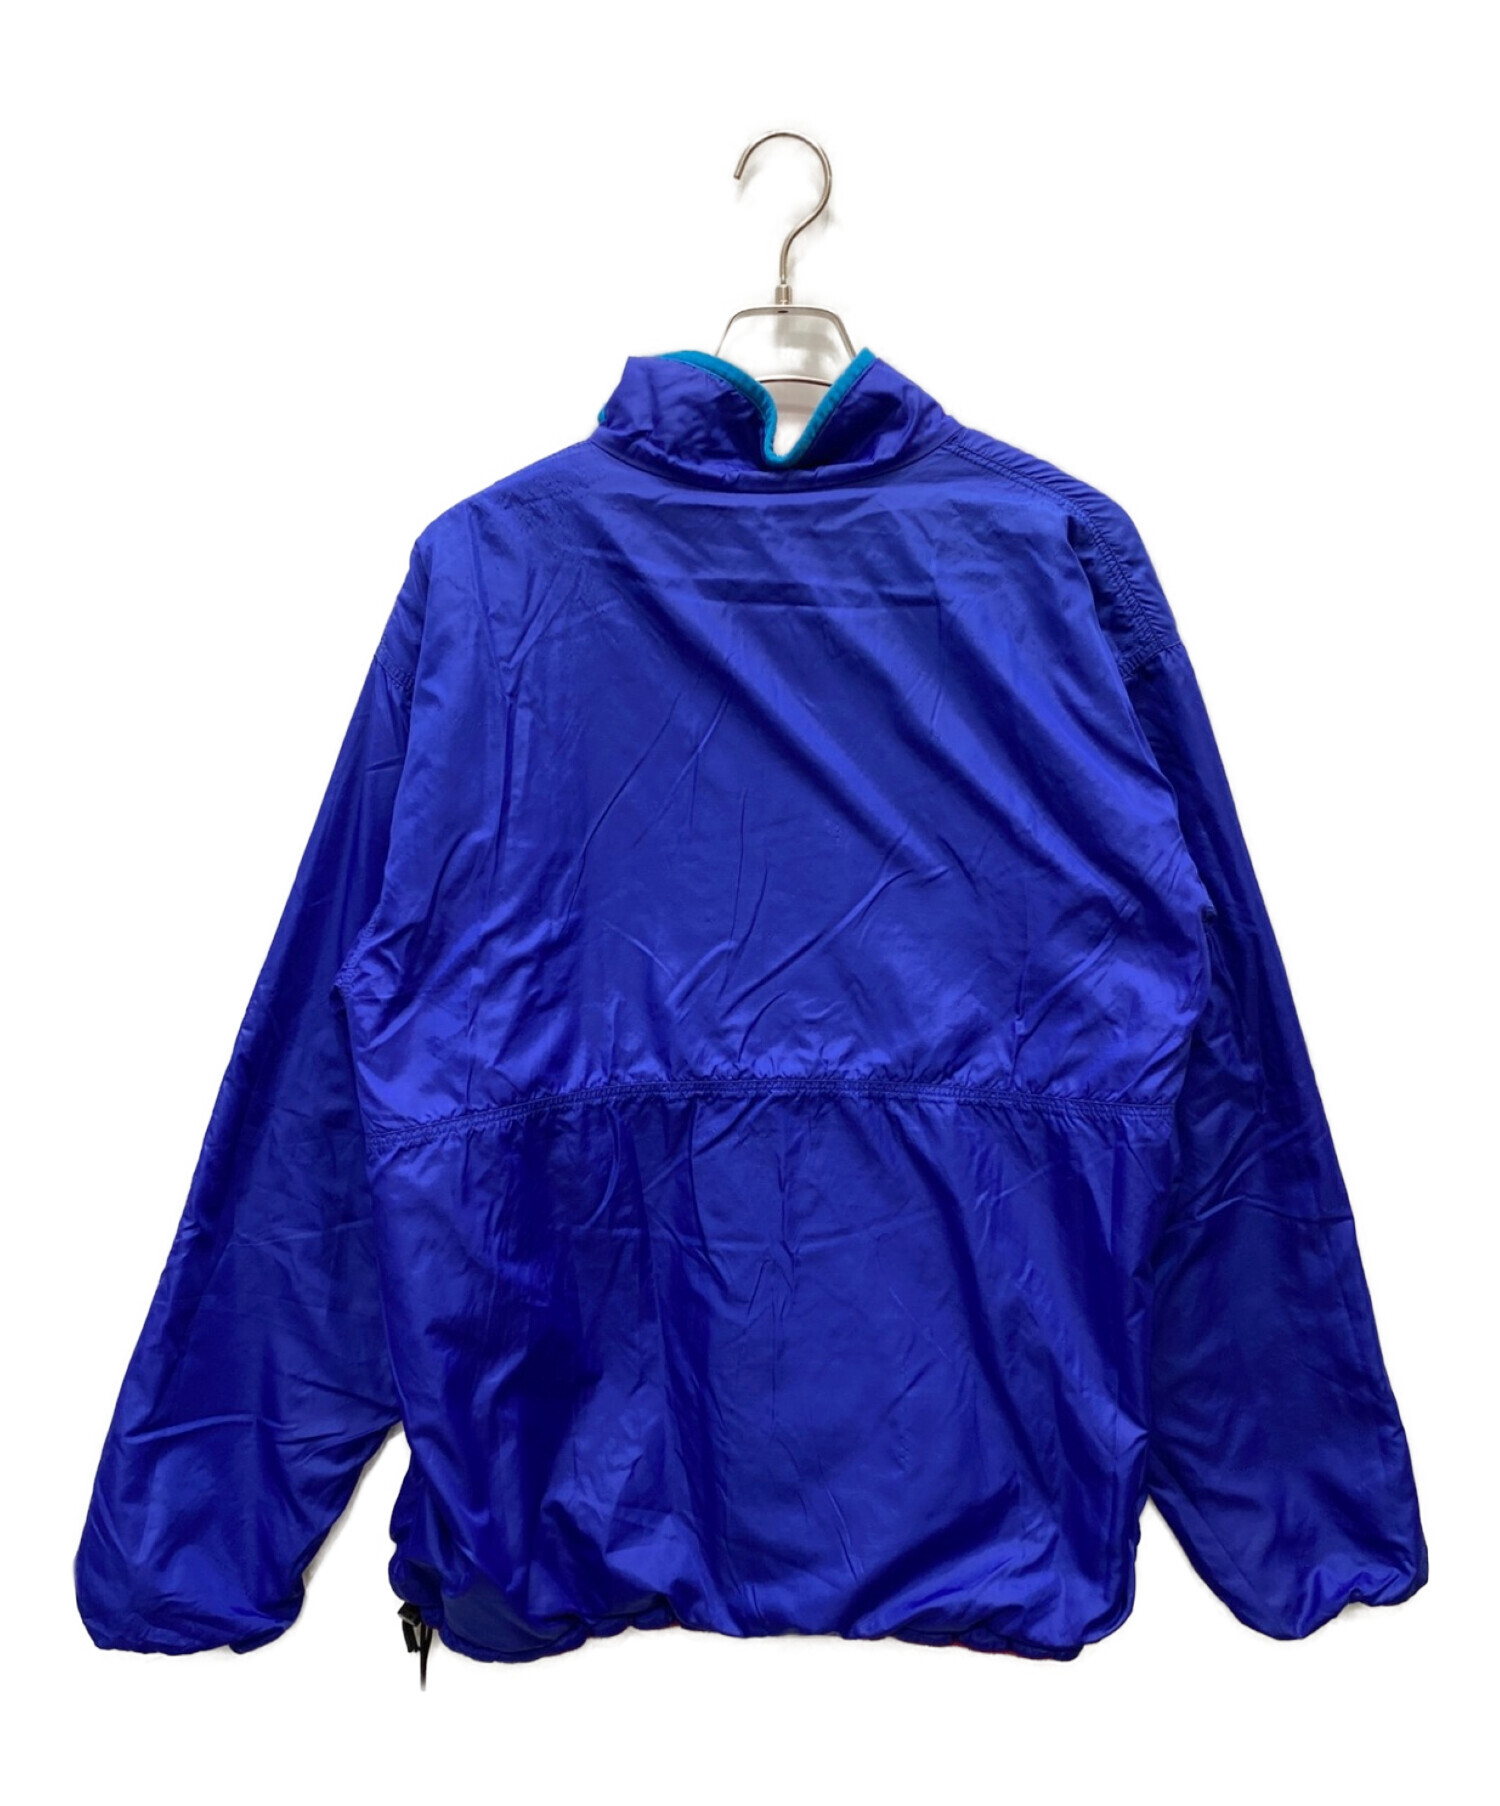 Patagonia (パタゴニア) グリセードリバーシブルジャケット ピンク×ブルー サイズ:L